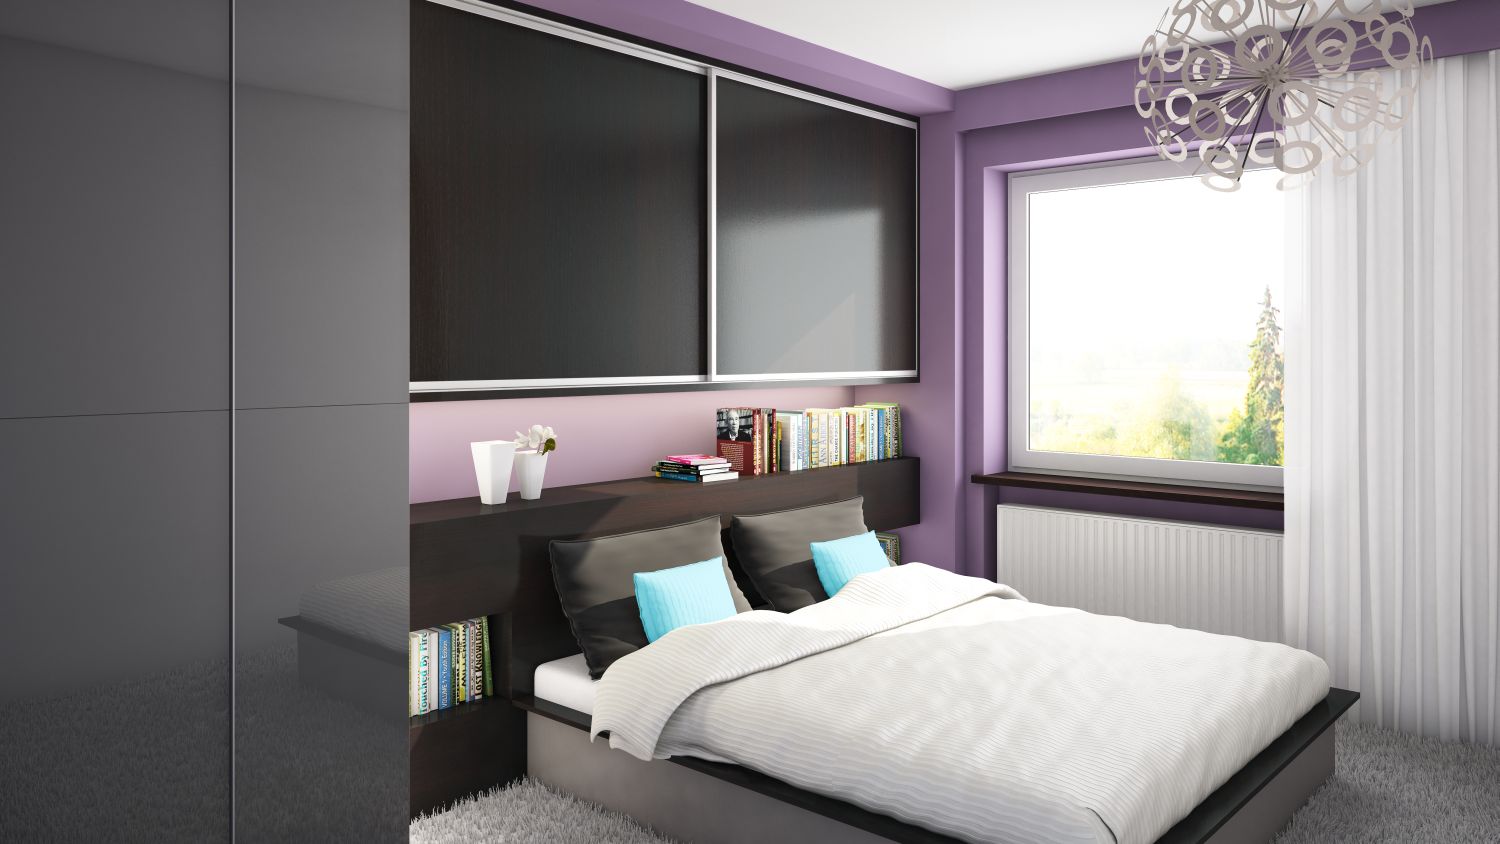 Fialová ložnice s praktickou vestavěnou skříní - Komandor – výrobce vestavěných skříní a kvalitního nábytku na míru